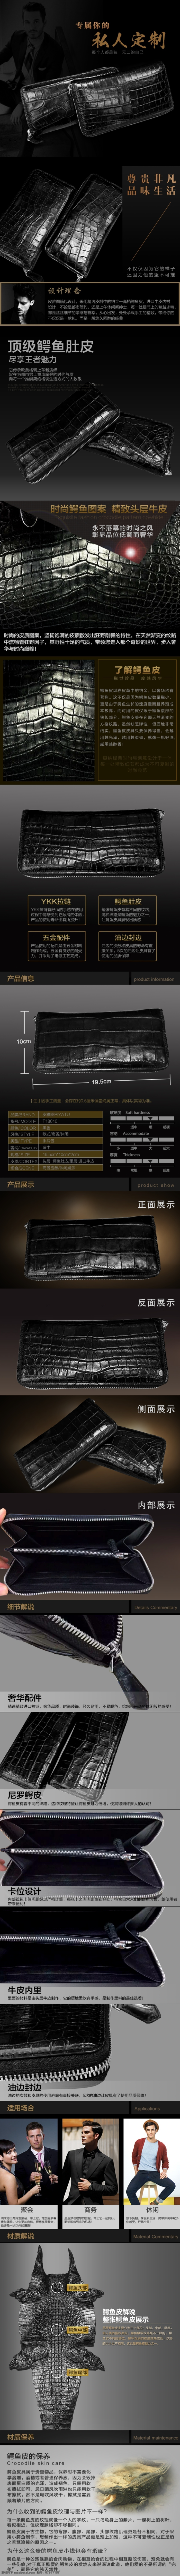 男士 鳄鱼 皮 手包 淘宝素材 淘宝设计 淘宝模板下载 黑色